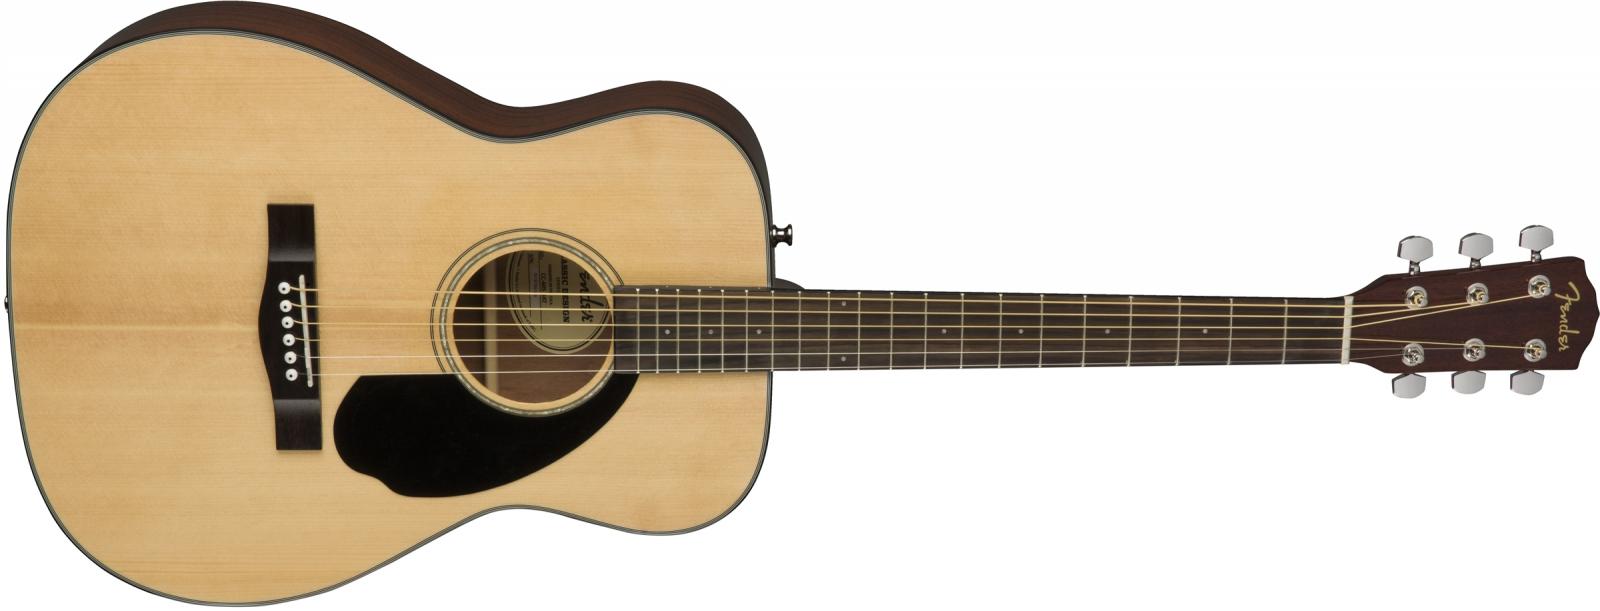 Fender CC-60S là một trong số những cây guitar dễ sử dụng nhất cho người mới bắt đầu